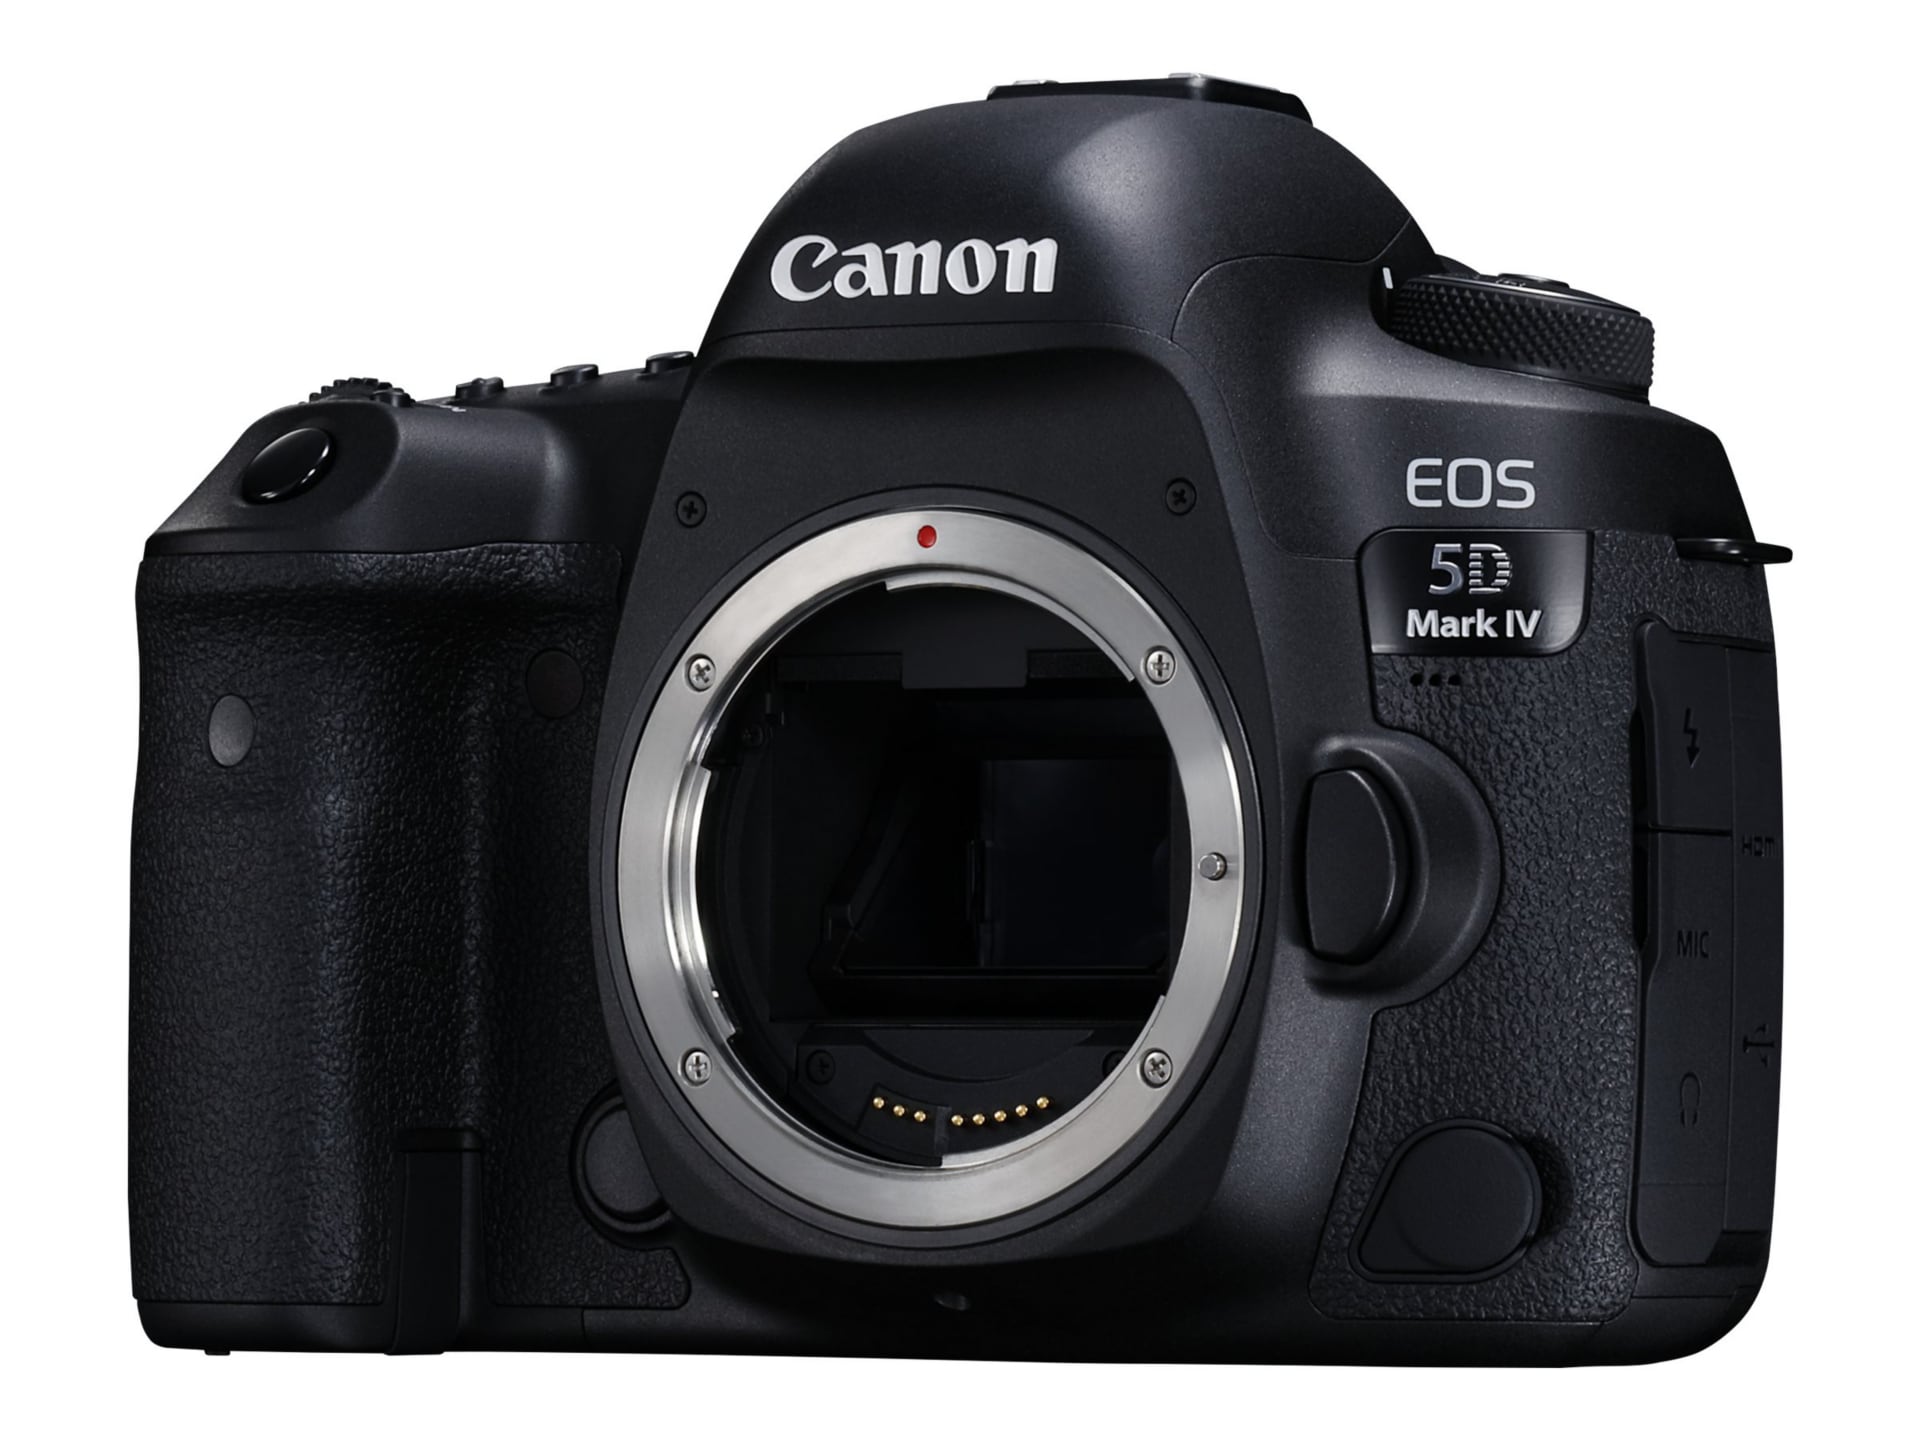 EOS 5D Mark - - body only - 1483C002 - Cameras - CDW.com